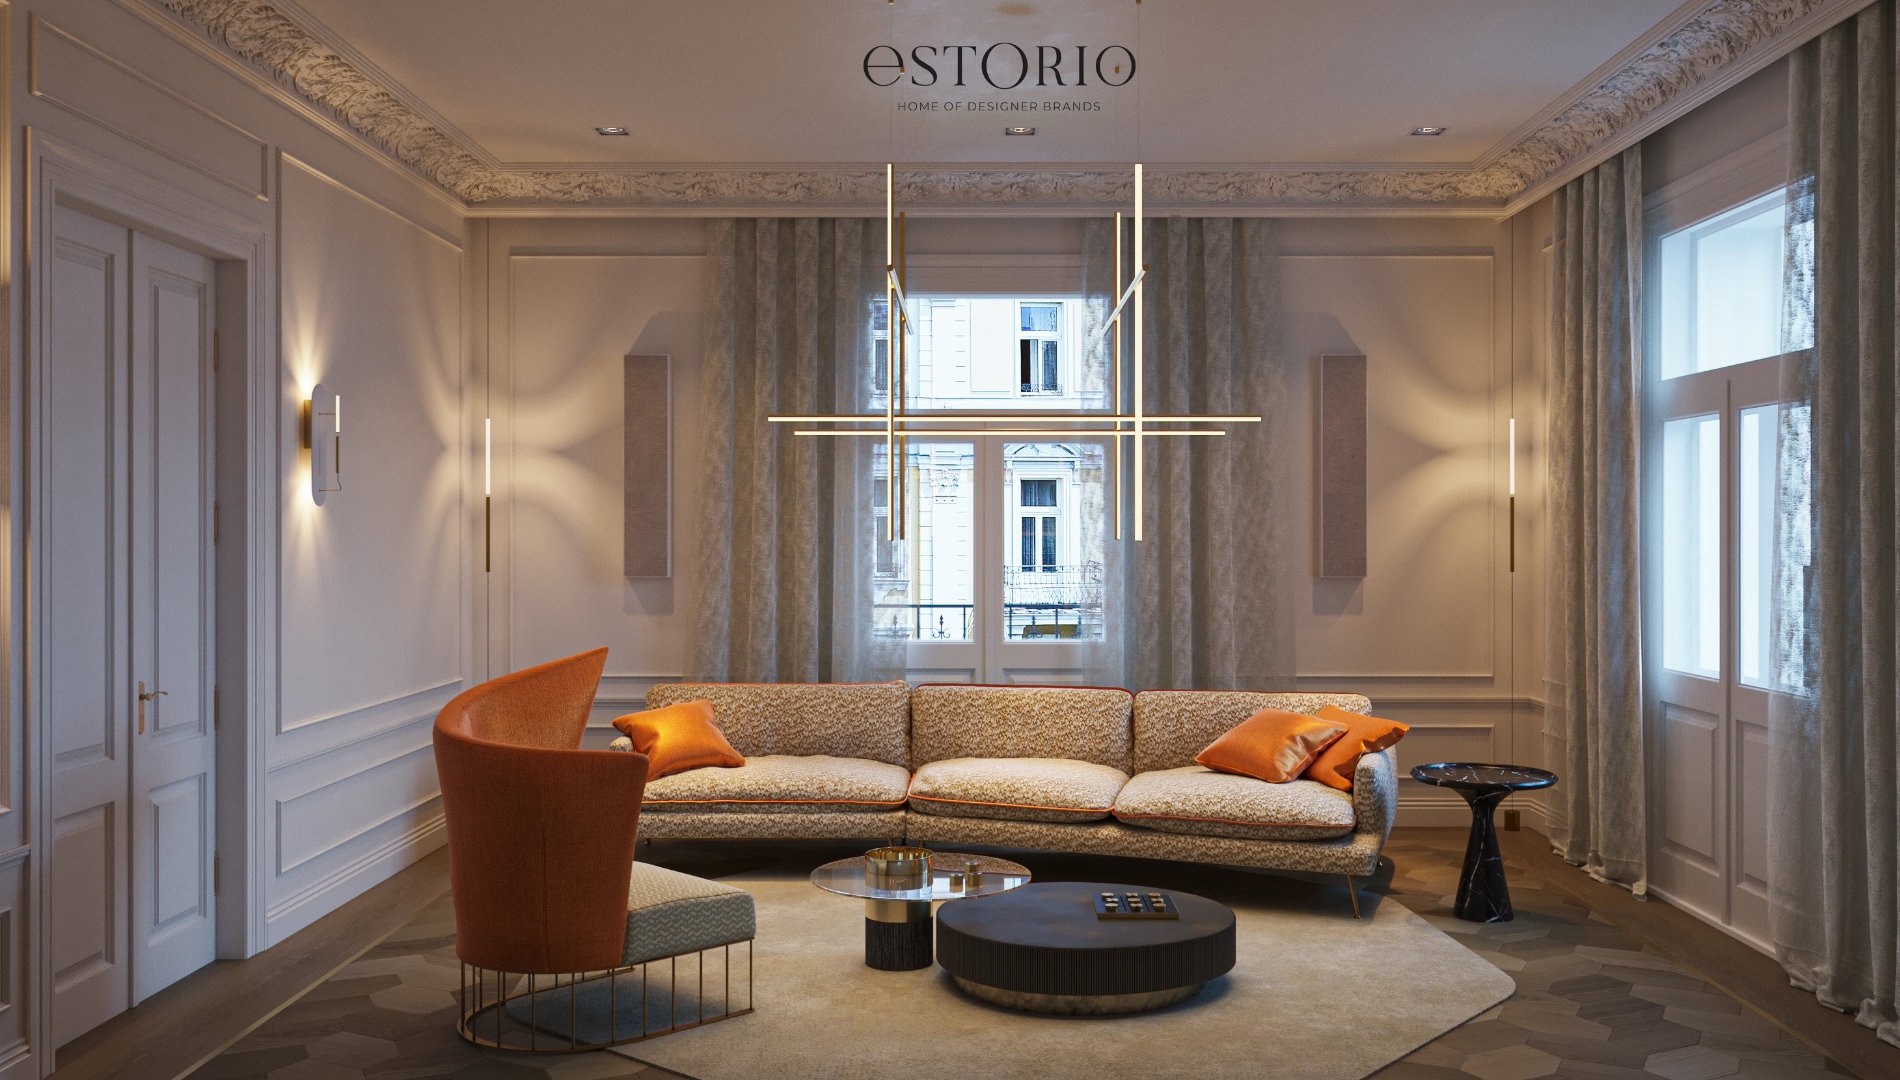 Discover Estorio, the hottest interior design hub of Budapest